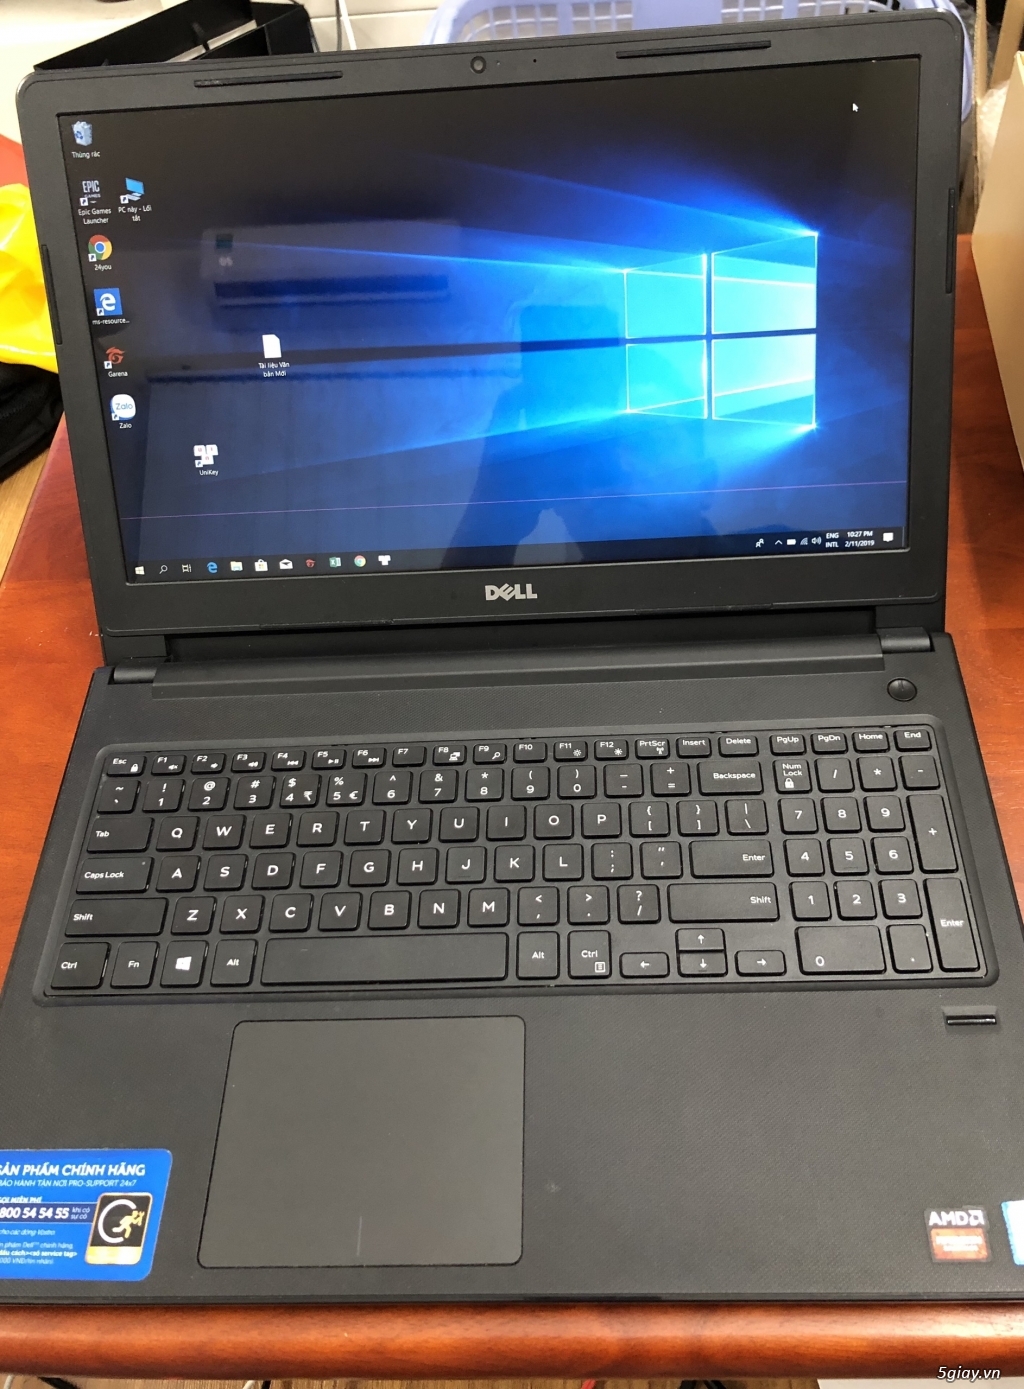 Bán Laptop Dell Vostro 3568 i7 7500U giá rẻ, tdm bình dương - 4